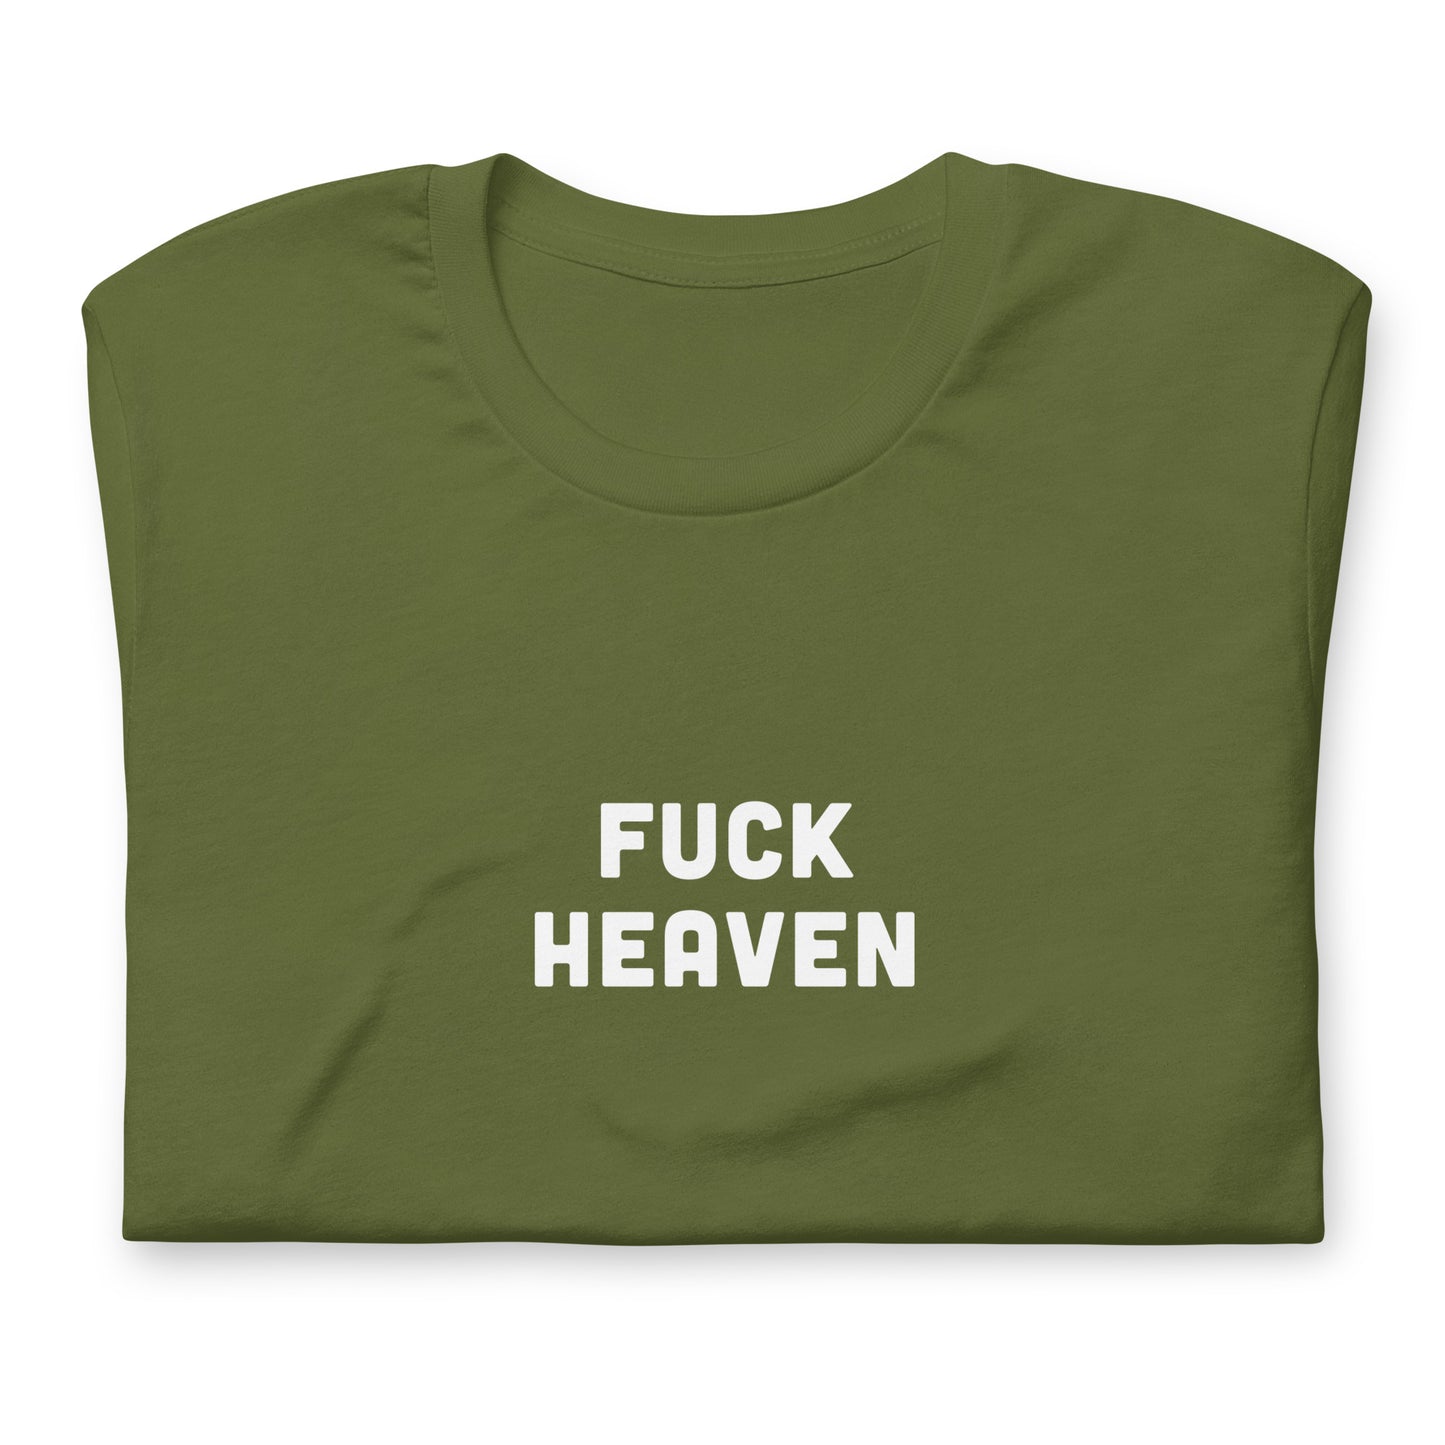 Fuck Heaven T-Shirt Size M Color Navy